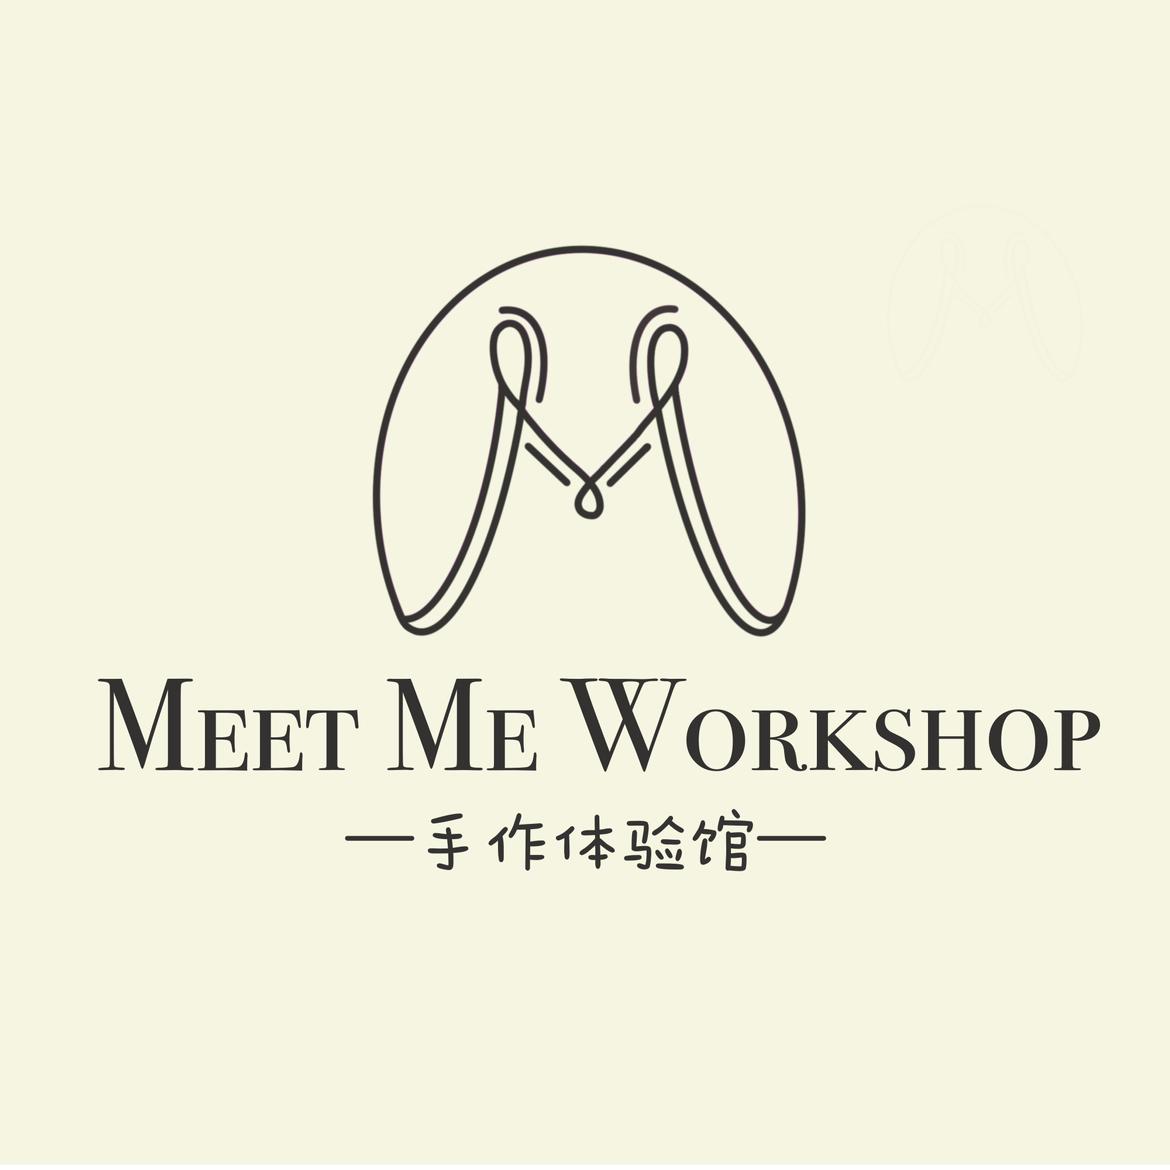 MeetMe Workshop